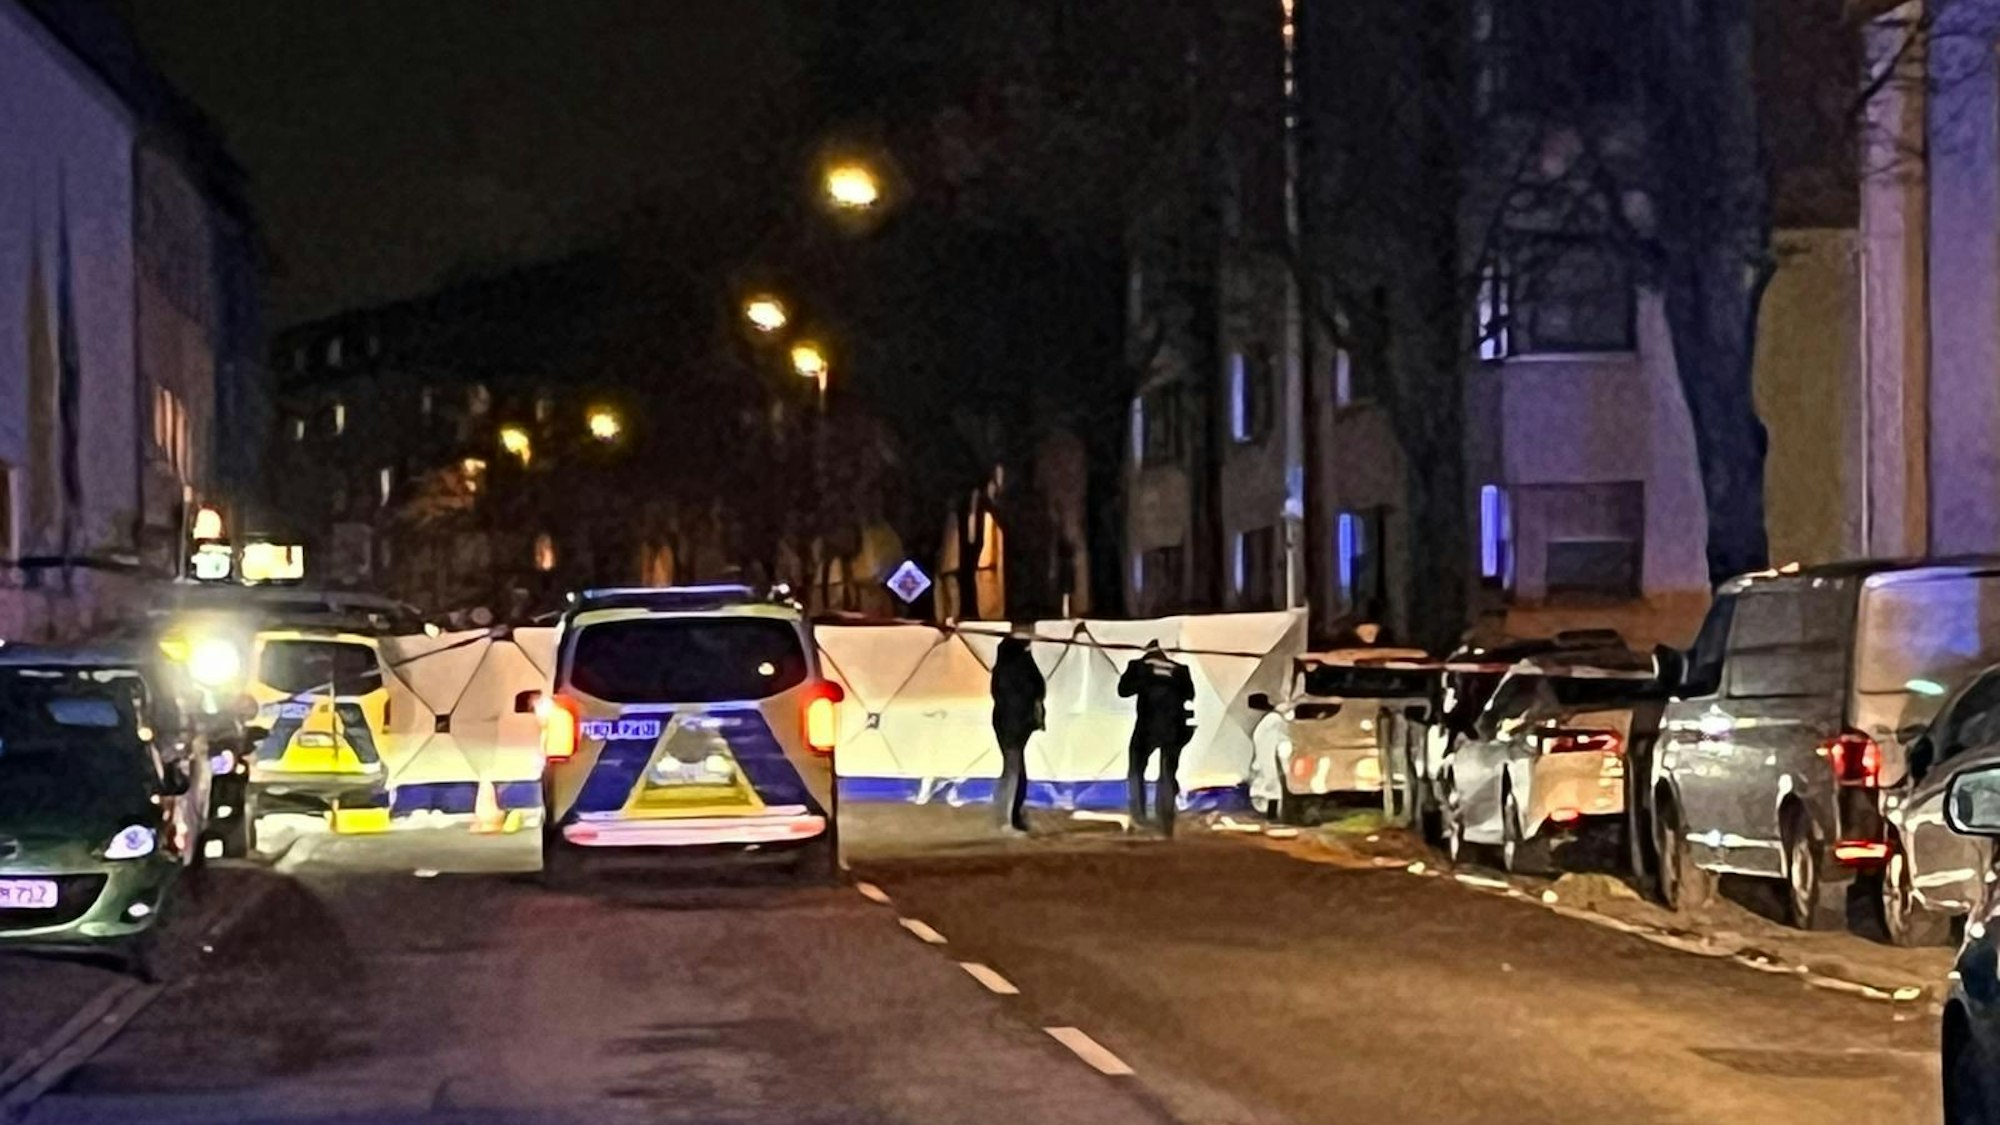 Mehrere Polizei-Autos an einem Tatort in Köln, der Bereich ist abgesperrt.